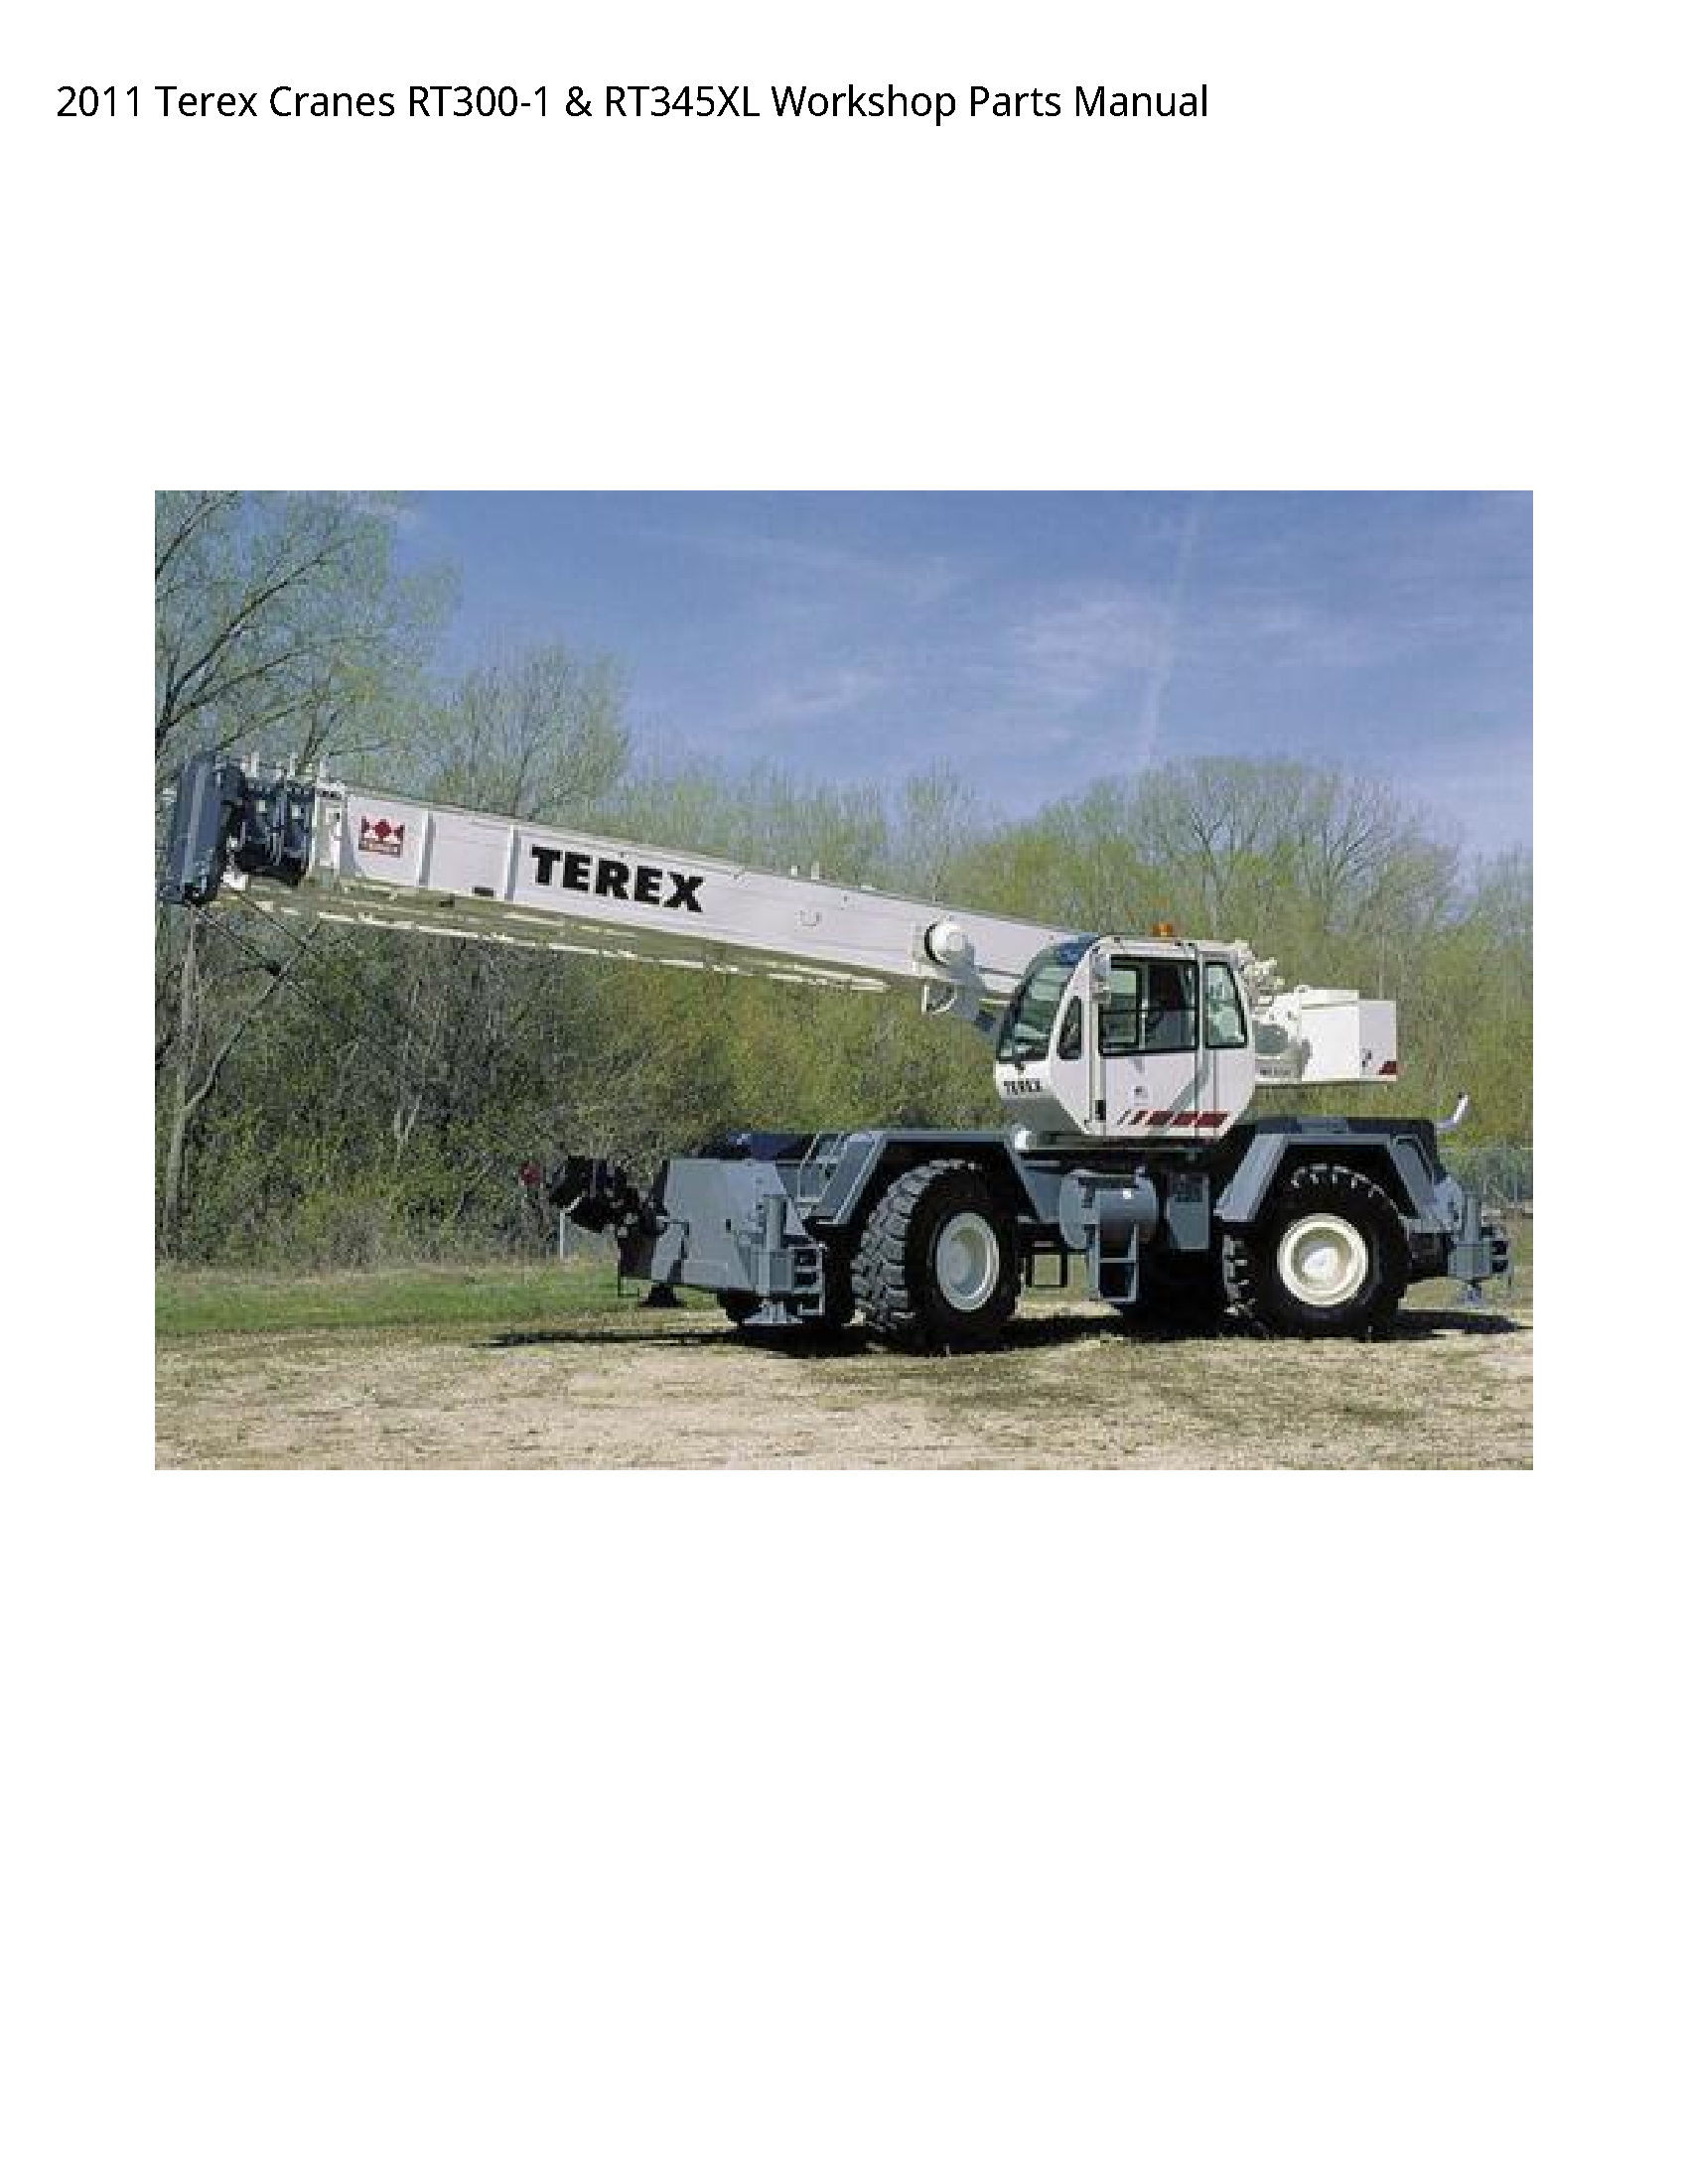 Terex RT300-1 Cranes Parts manual